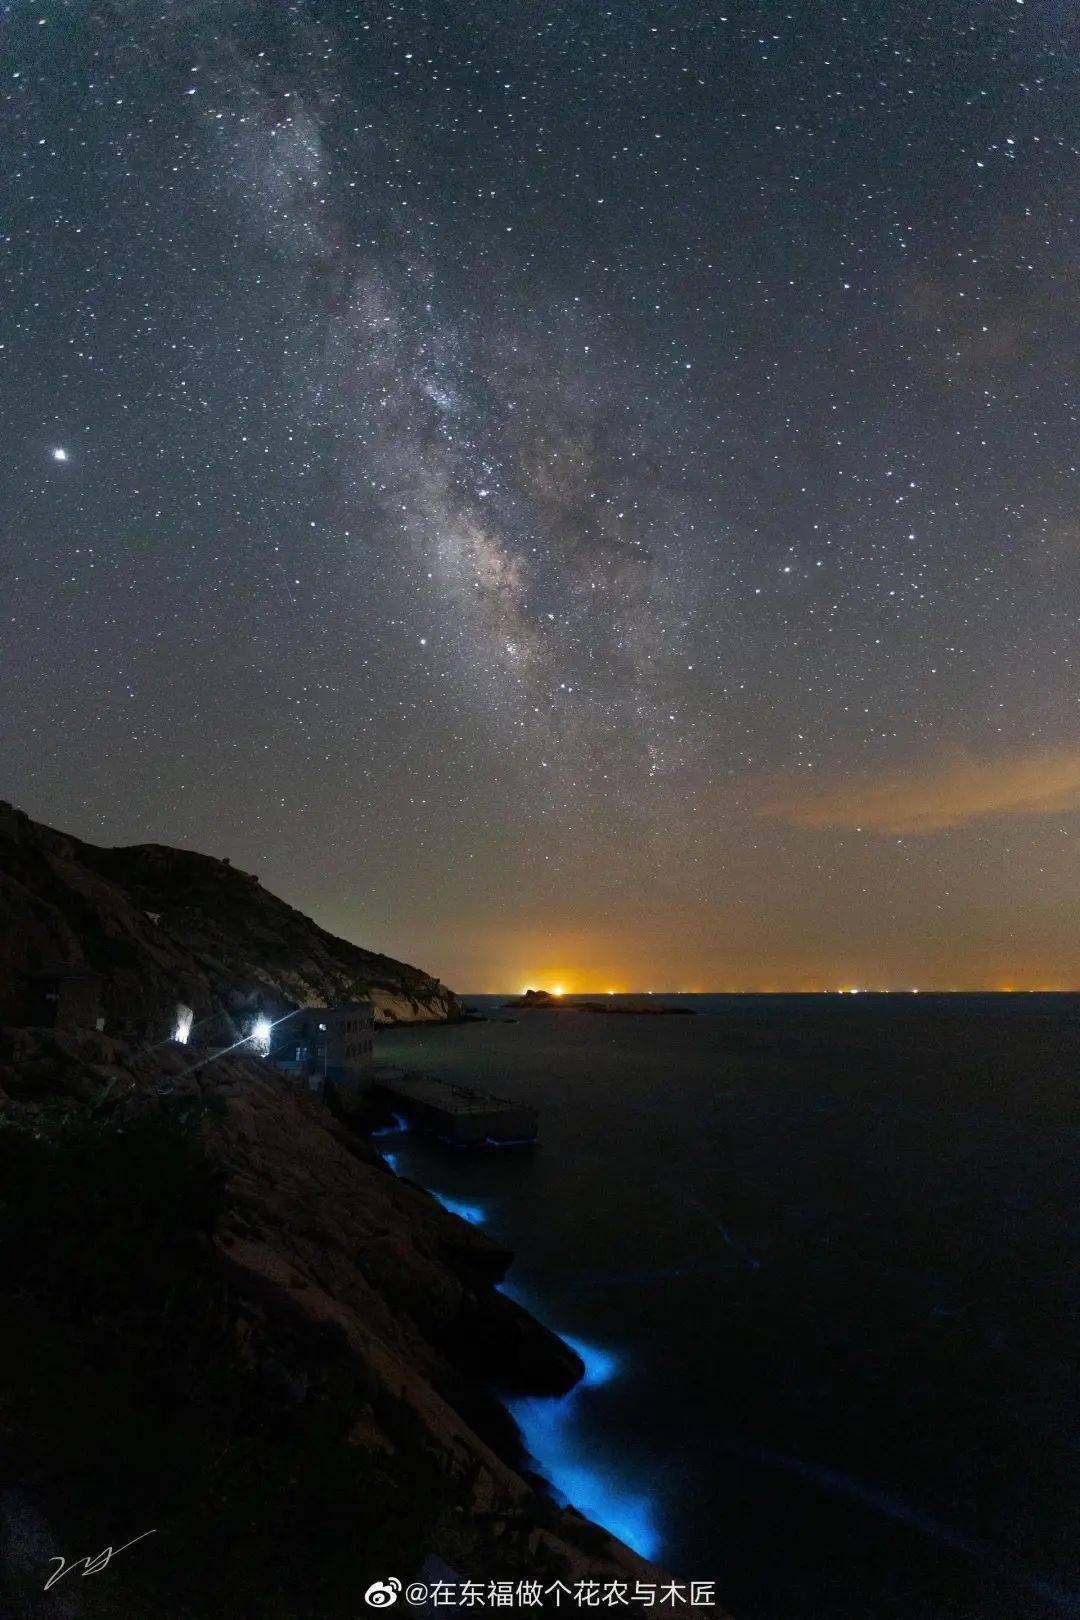 荧光海~广袤的星空,辽远的夜色,远离城市的喧嚣和拥挤,给踏上岛屿的